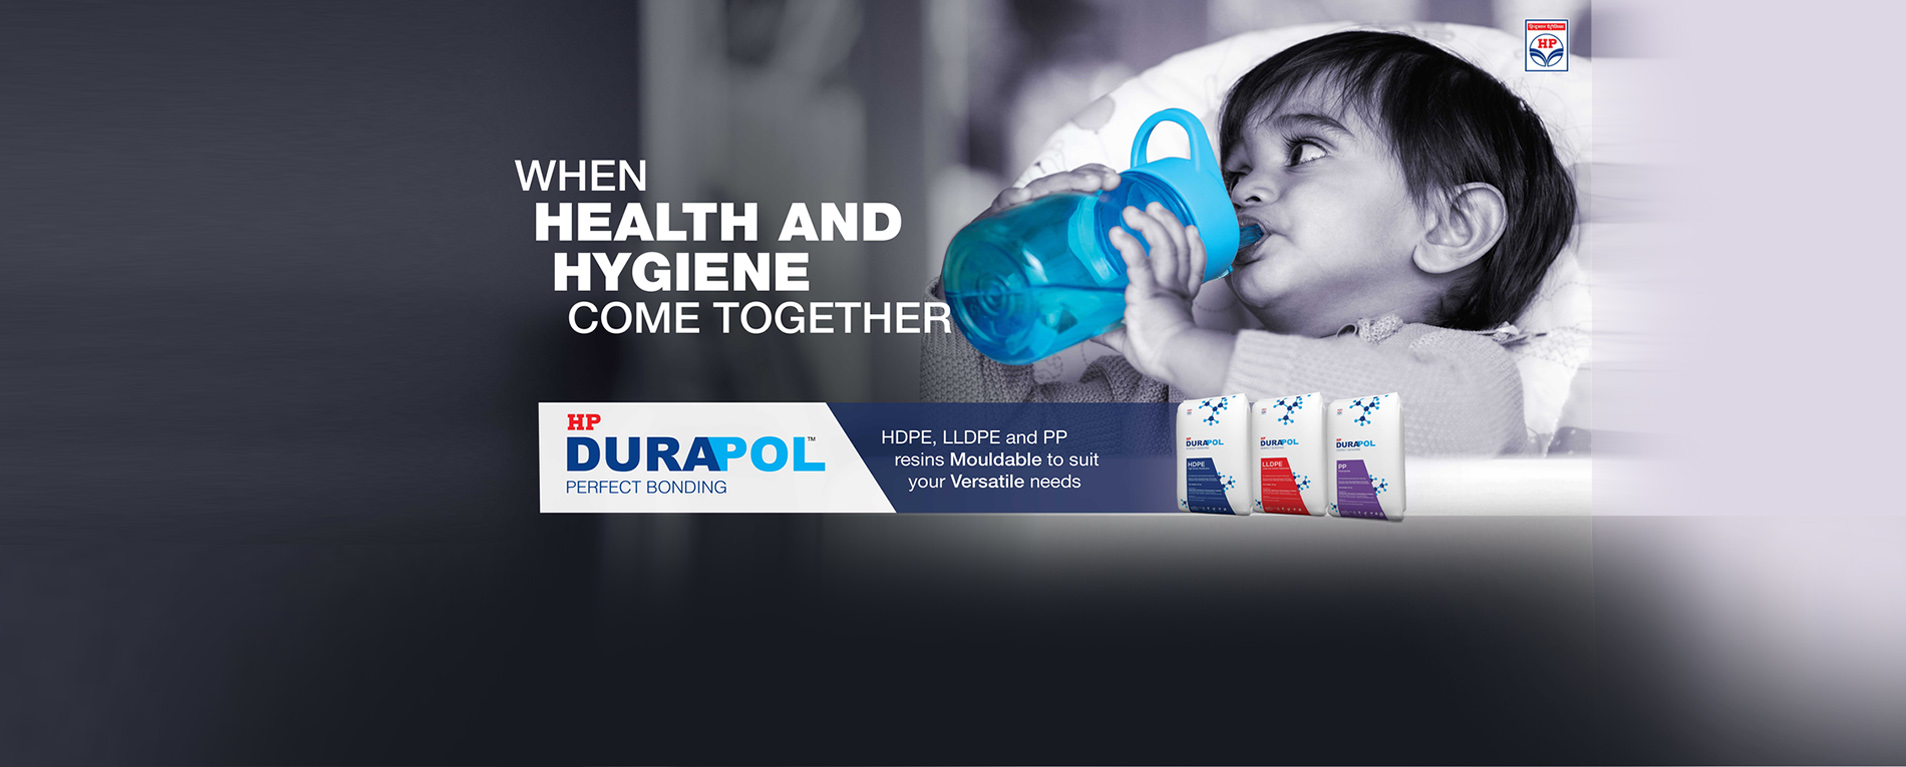 Durapol Brand Campaign - 4